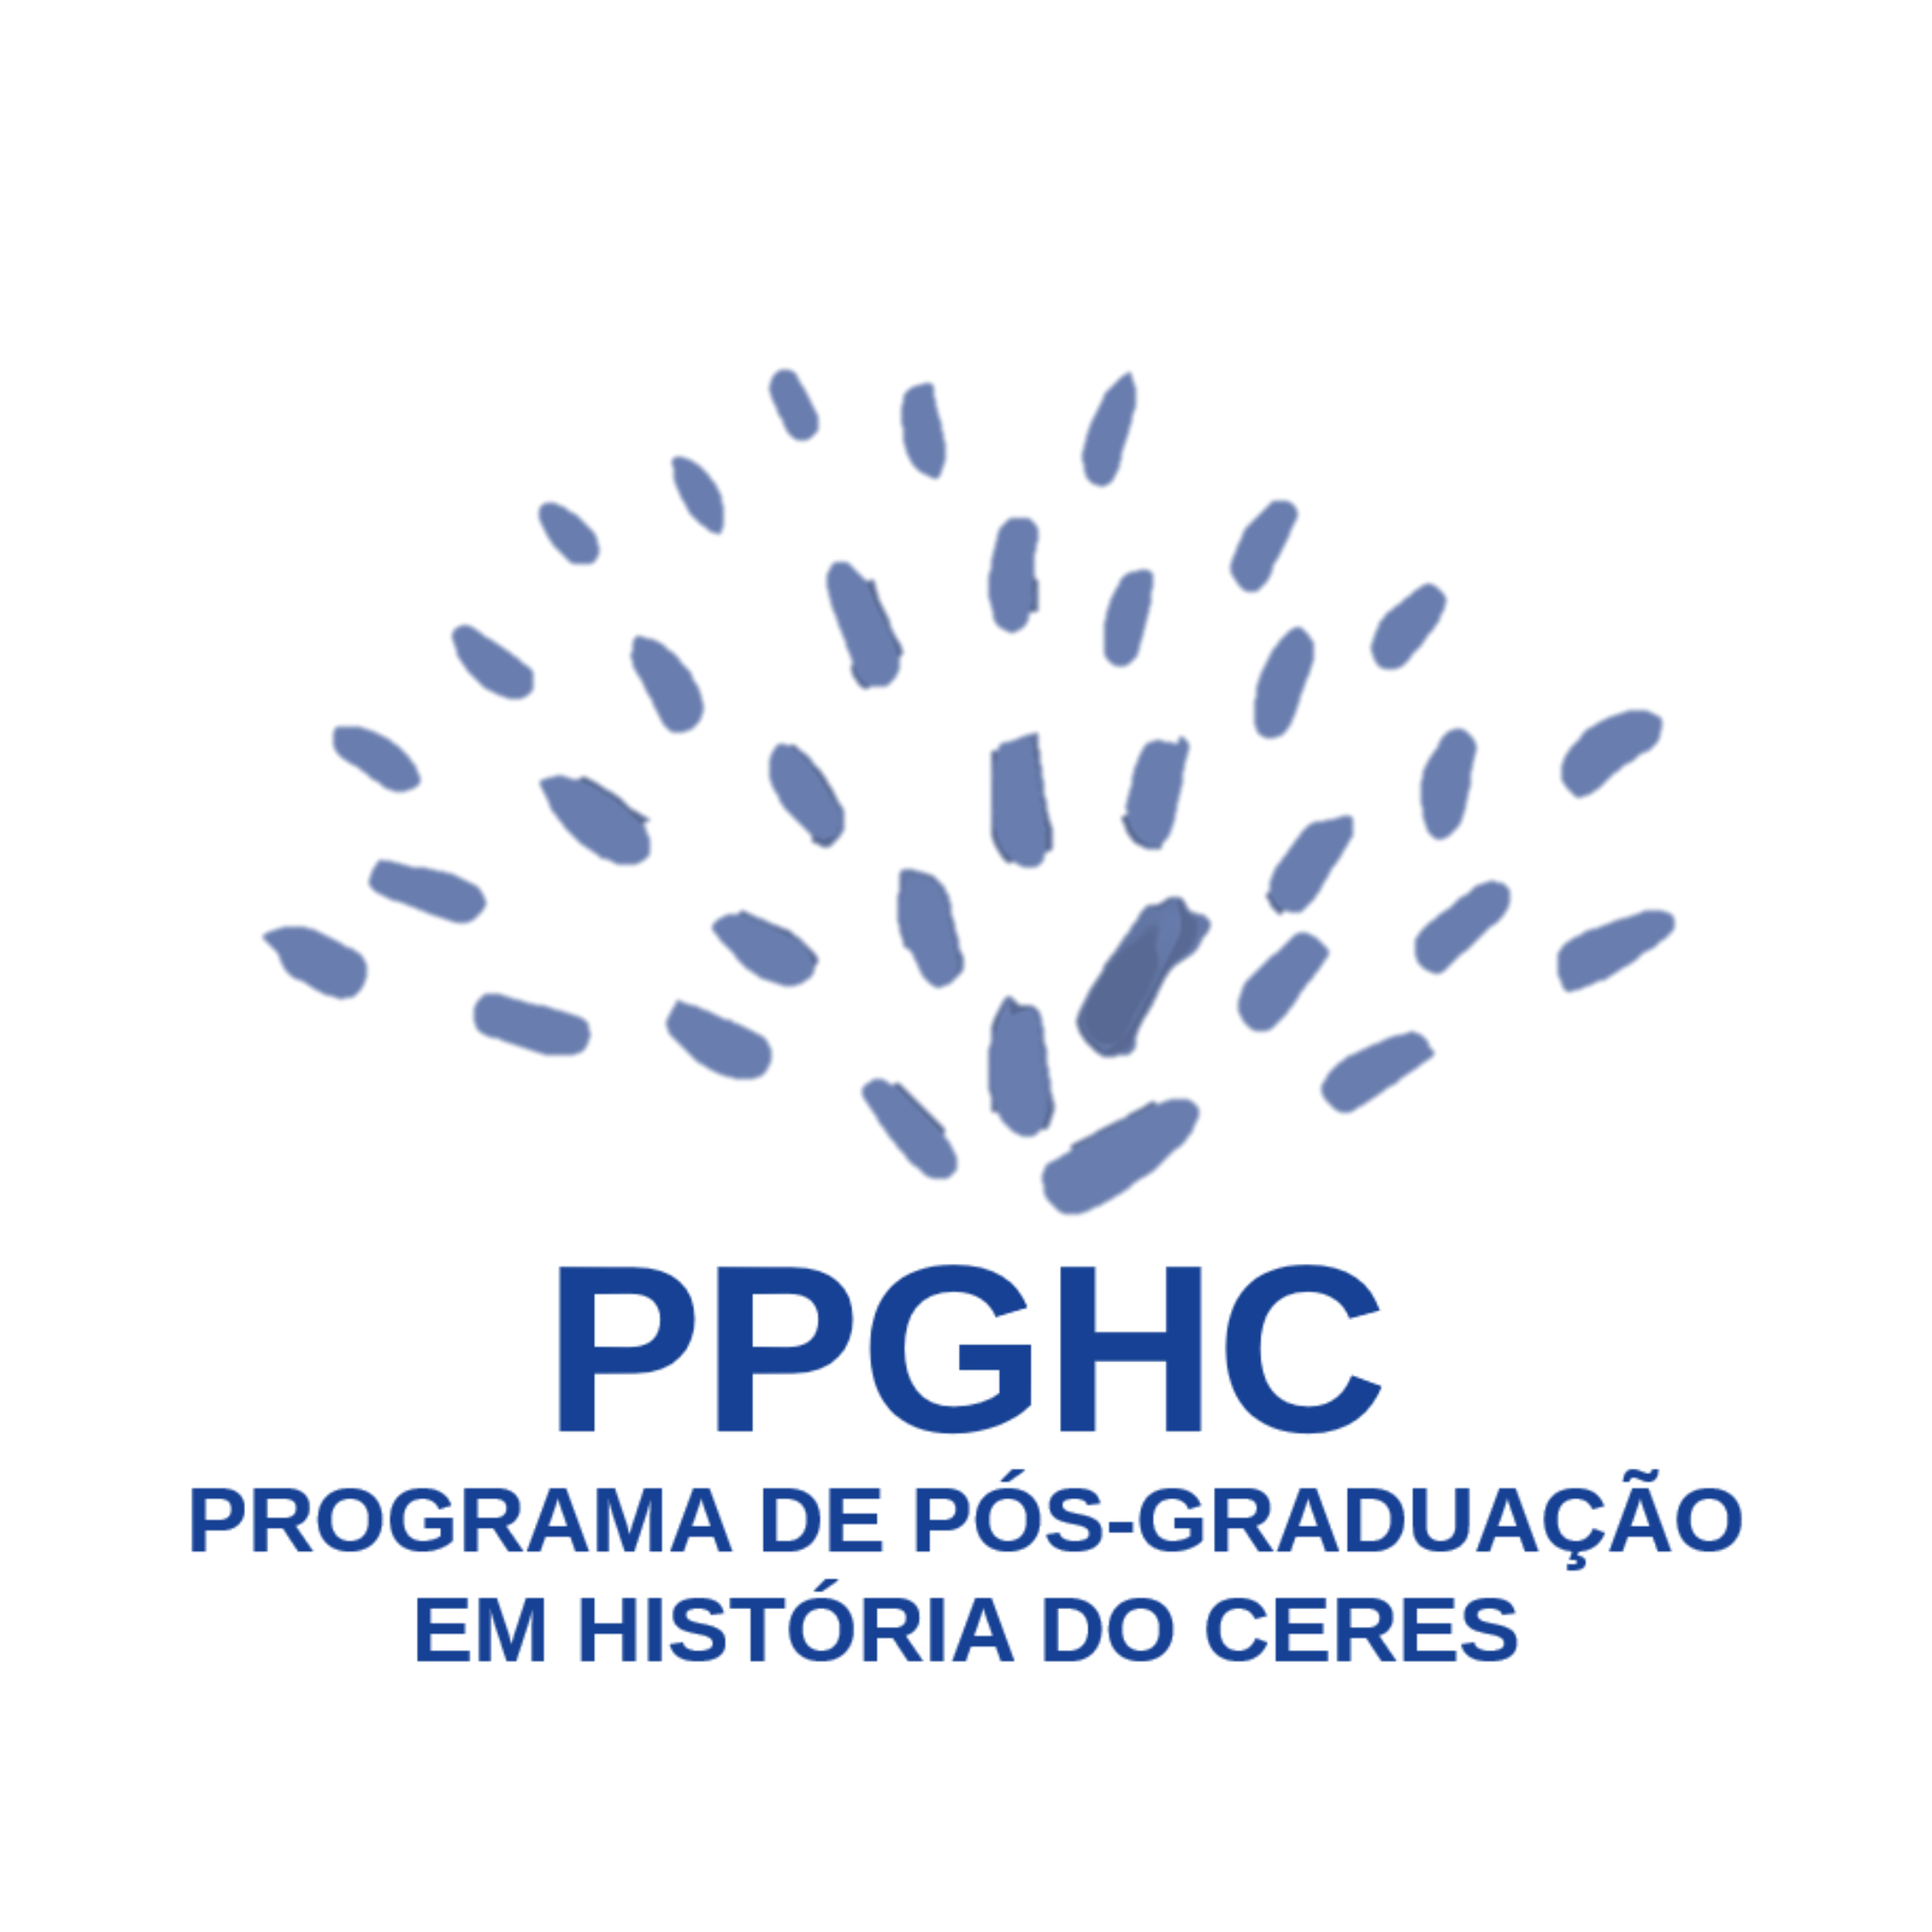 PPGHC